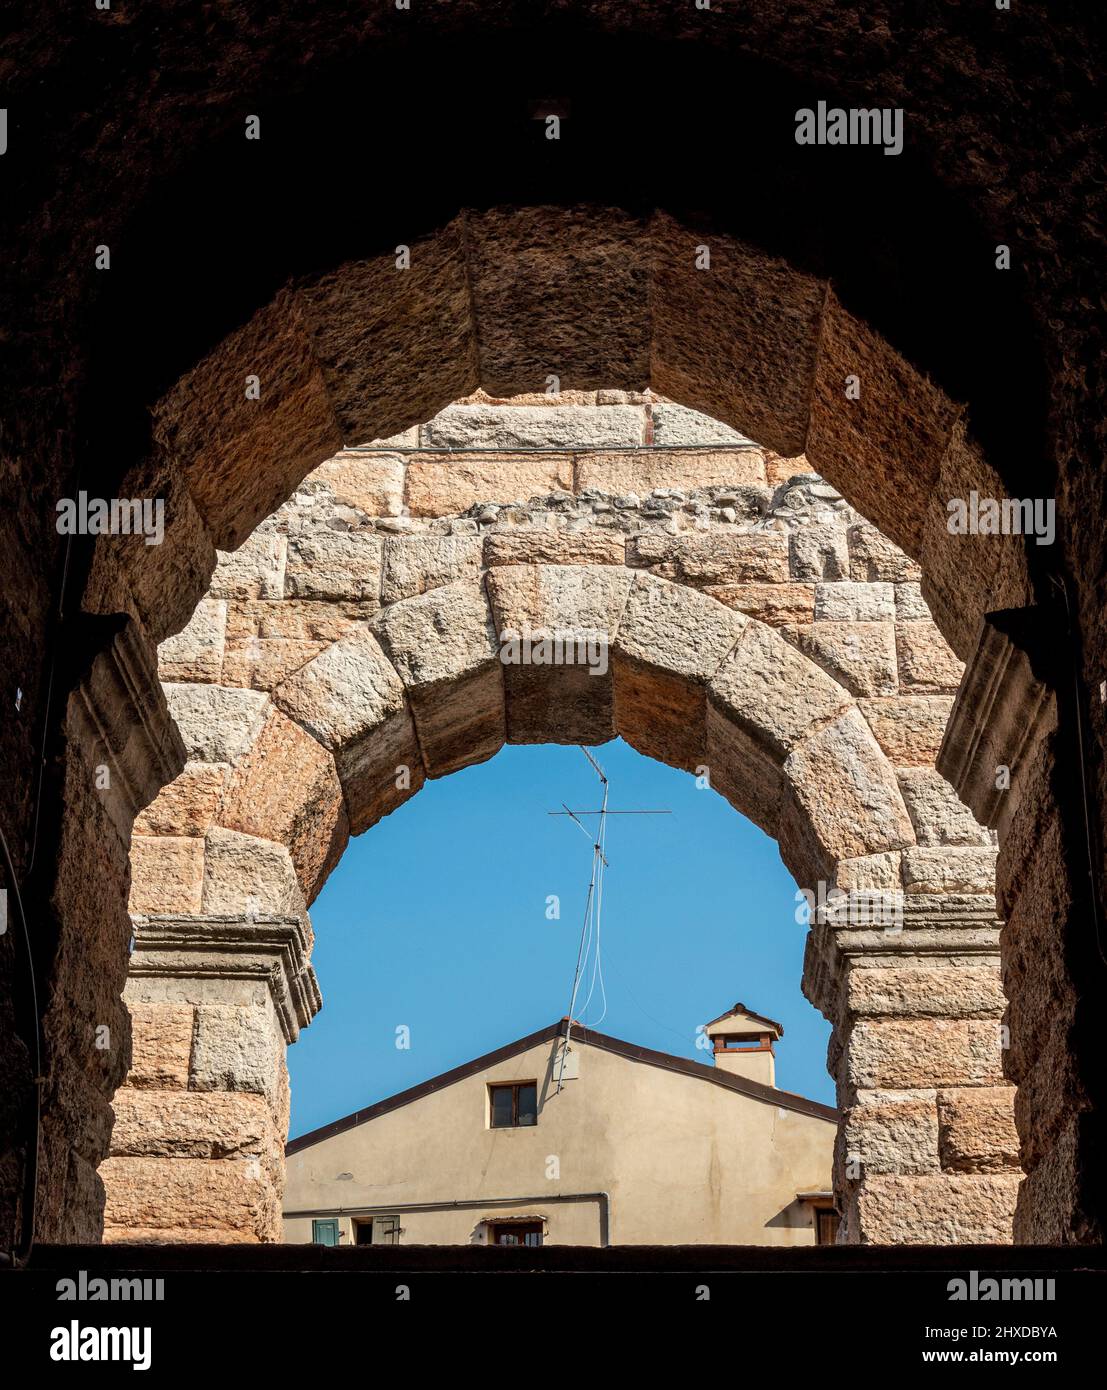 Façade pittoresque de l'ancienne arène romaine de Vérone, Italie Banque D'Images